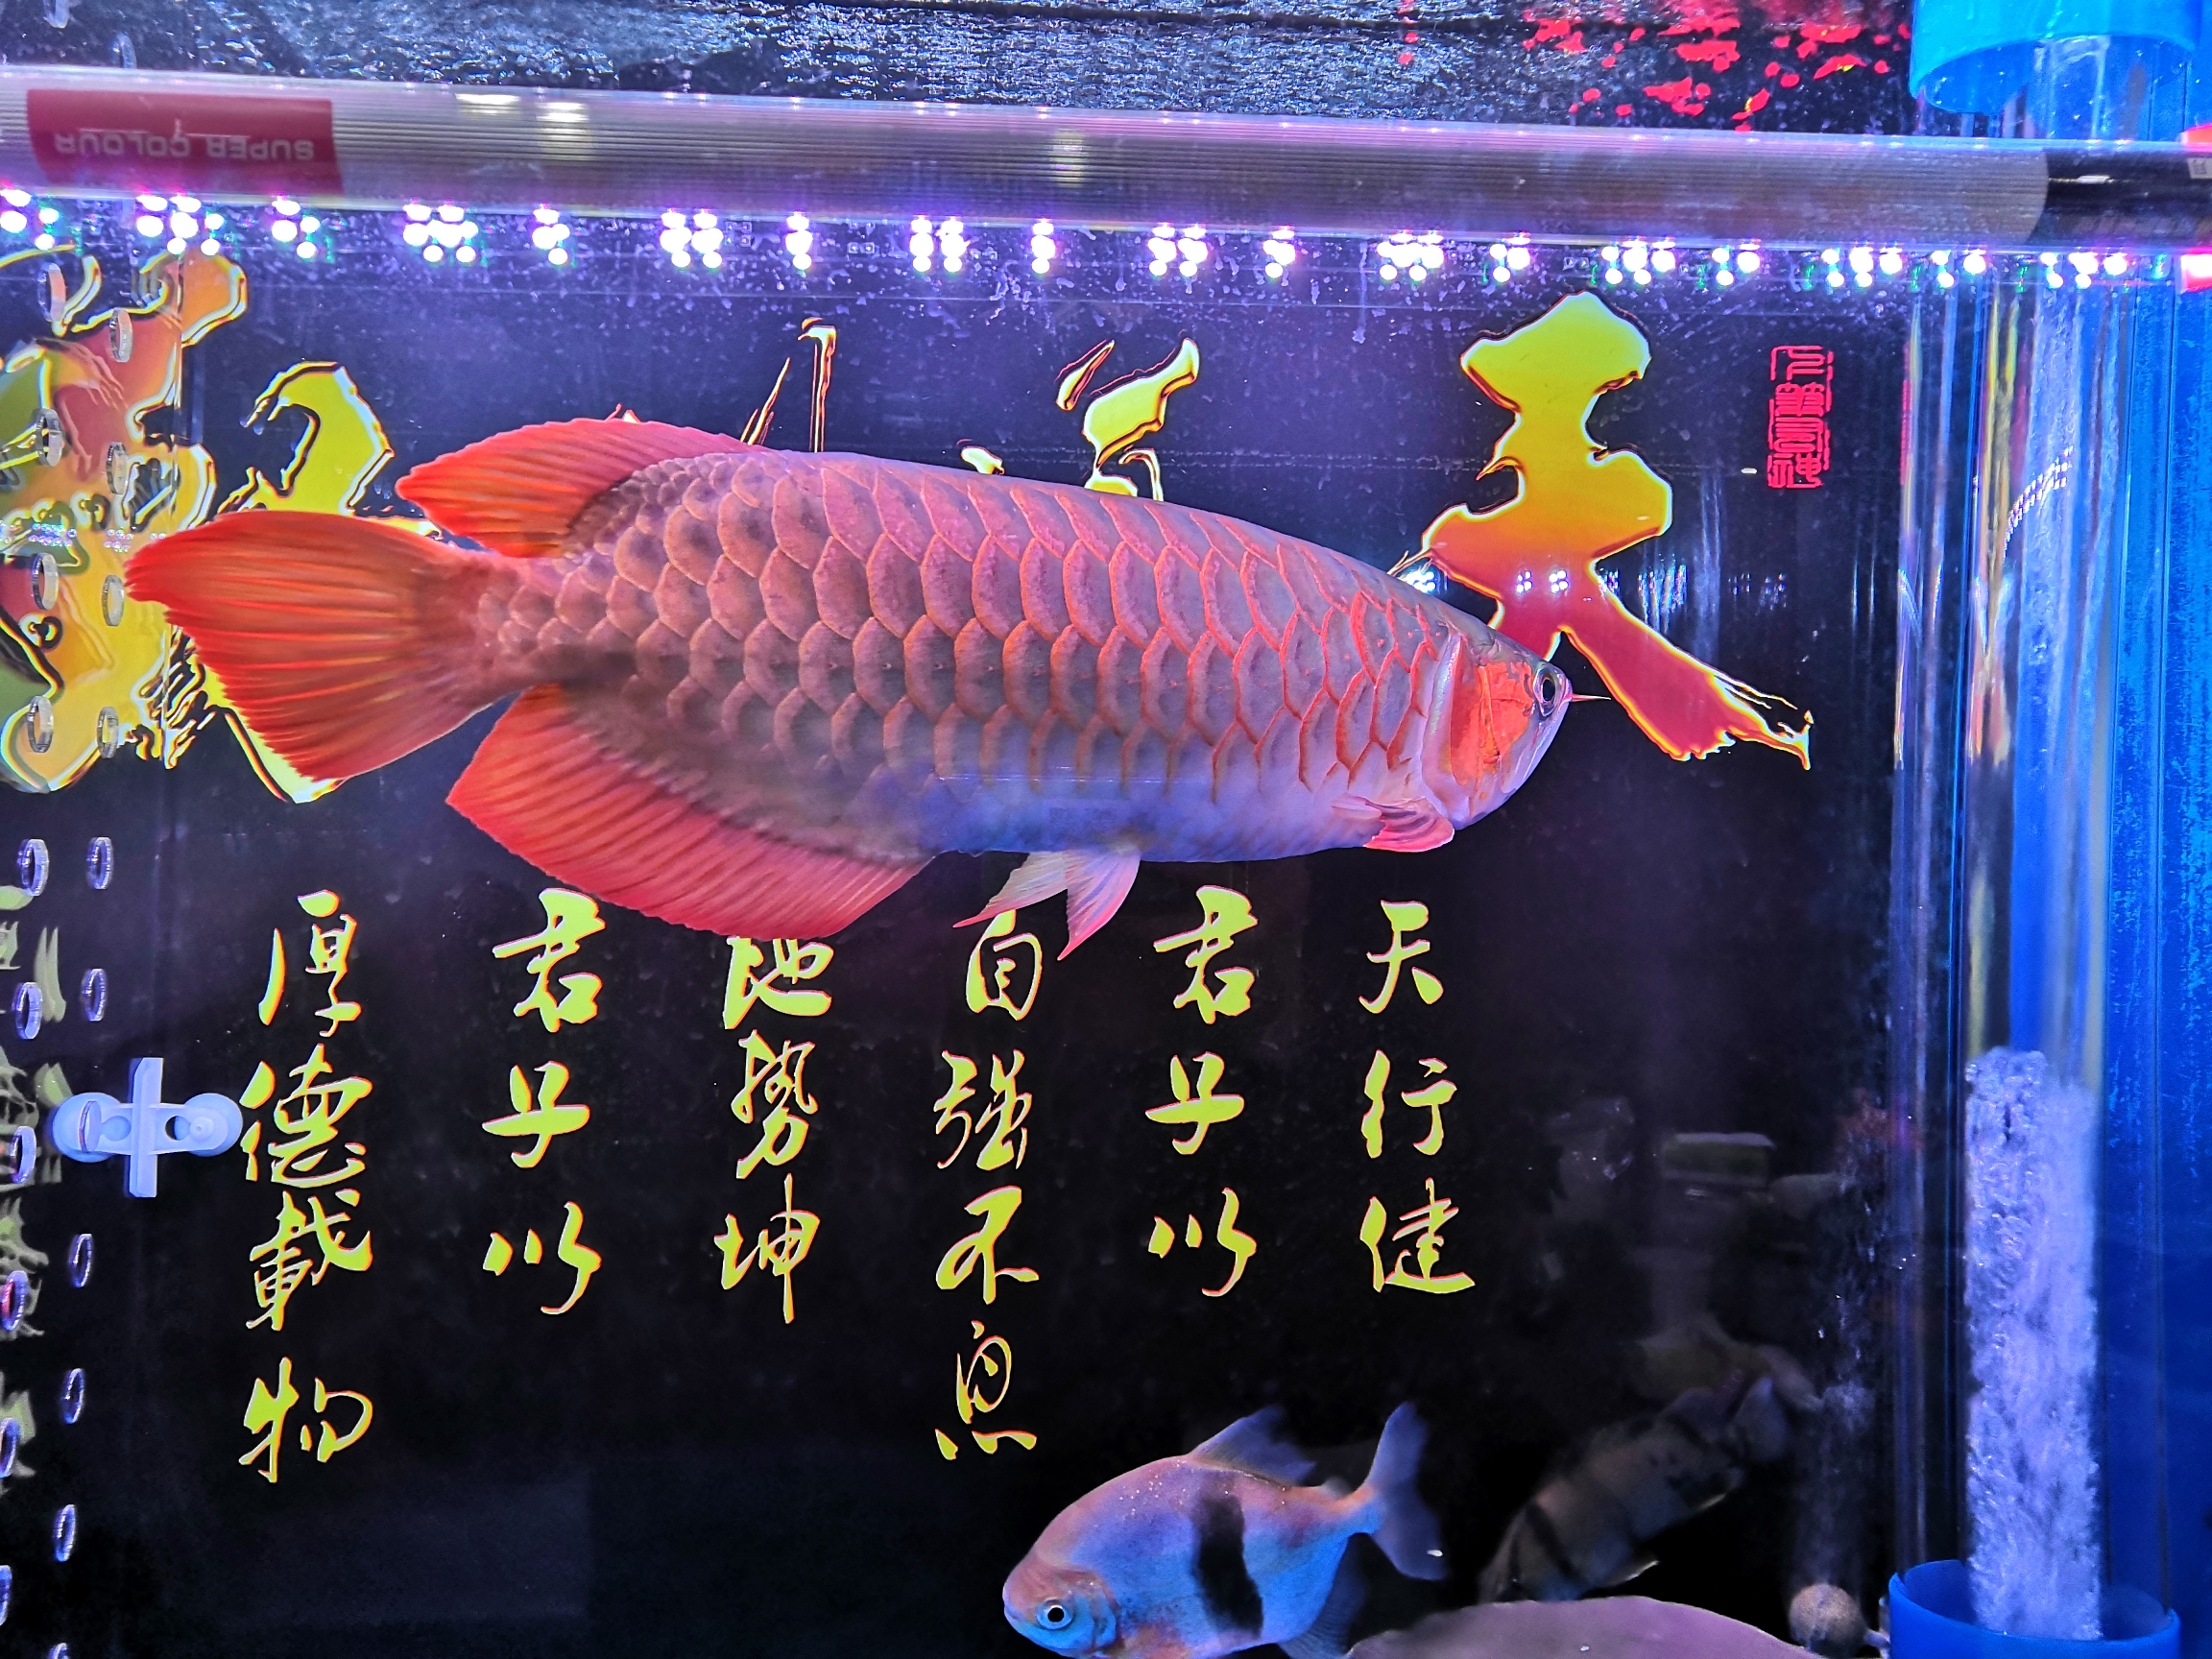 我家的红龙鱼长大了 玫瑰银版鱼 第1张